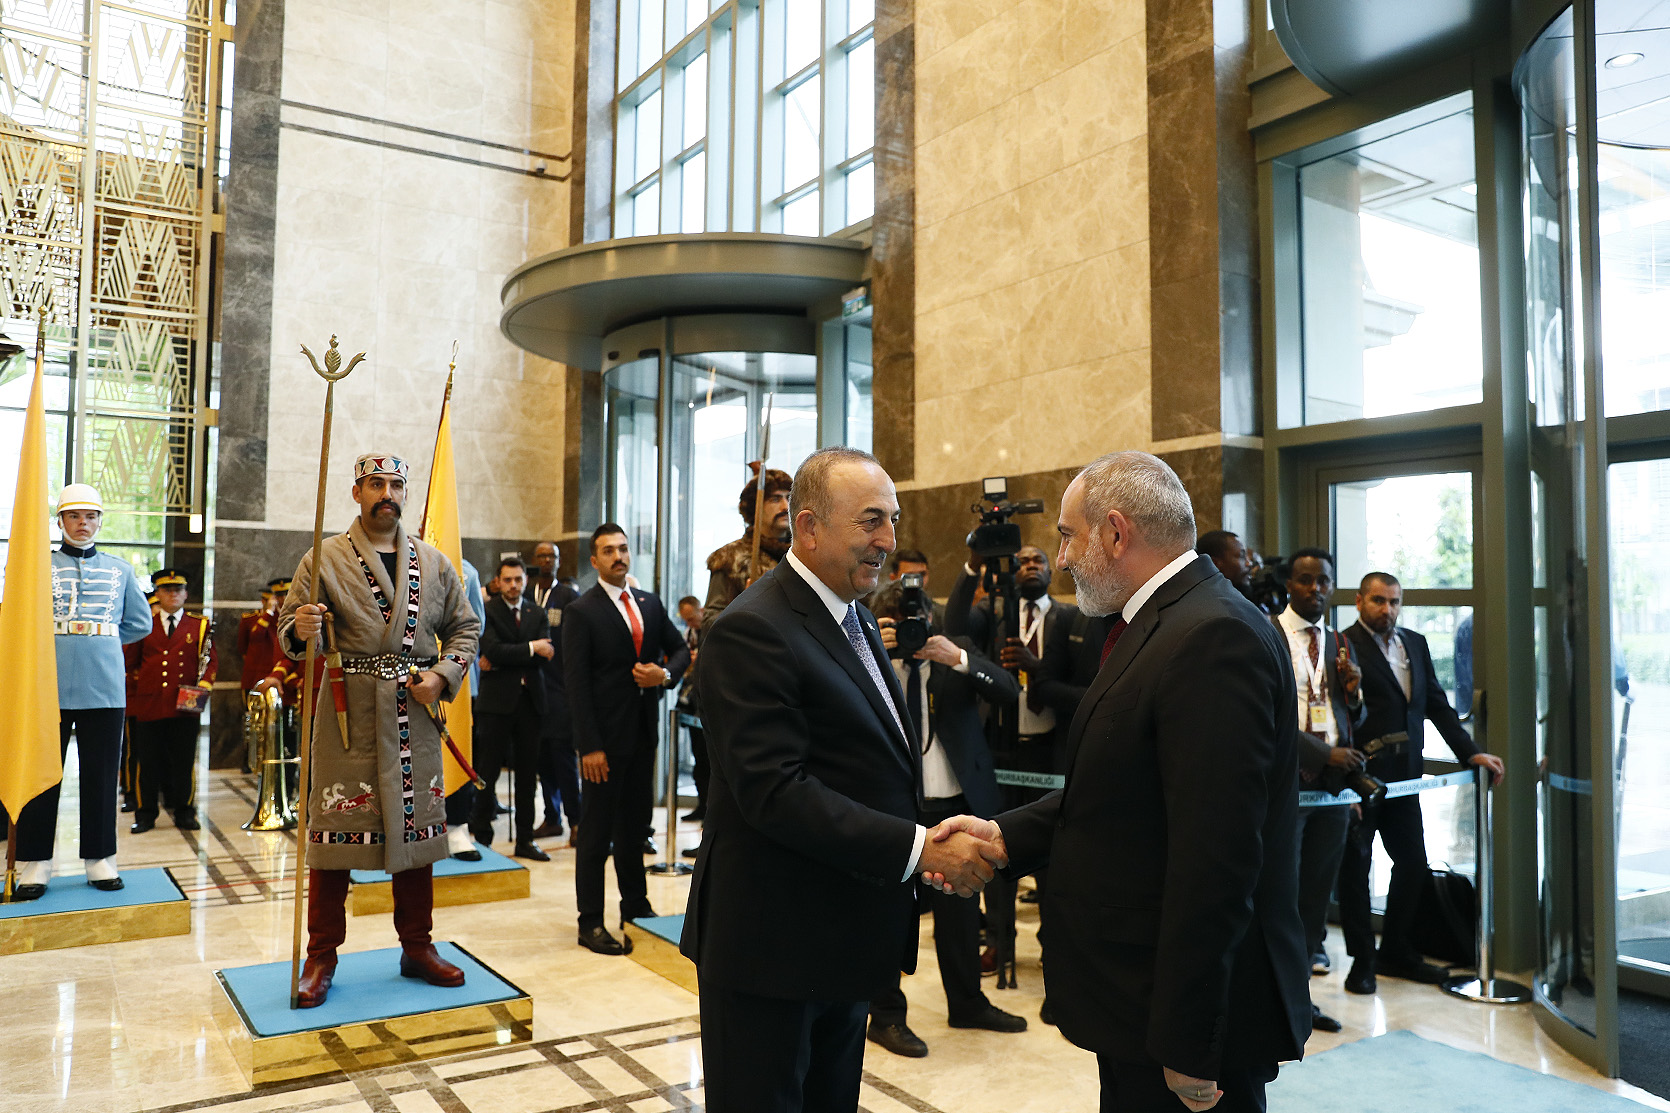 Пашинян присутствовал на церемонии инаугурации президента Турции